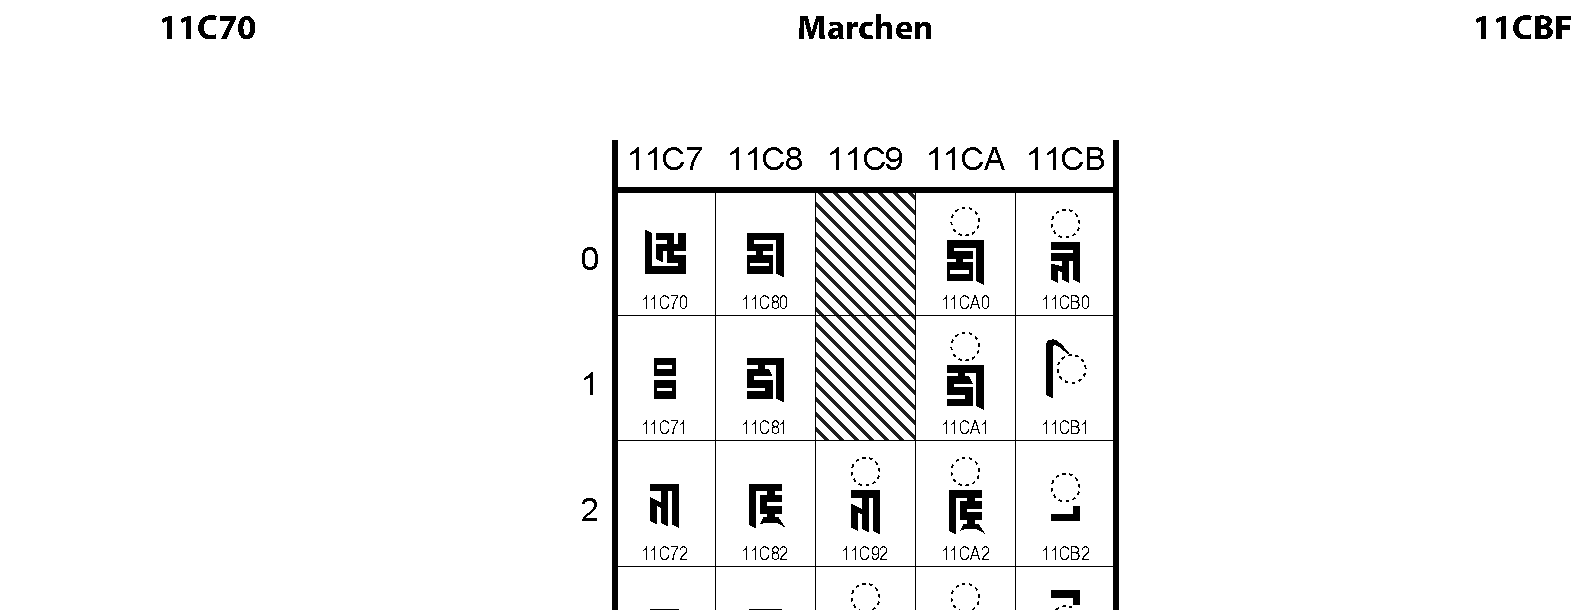 Unicode - Marchen